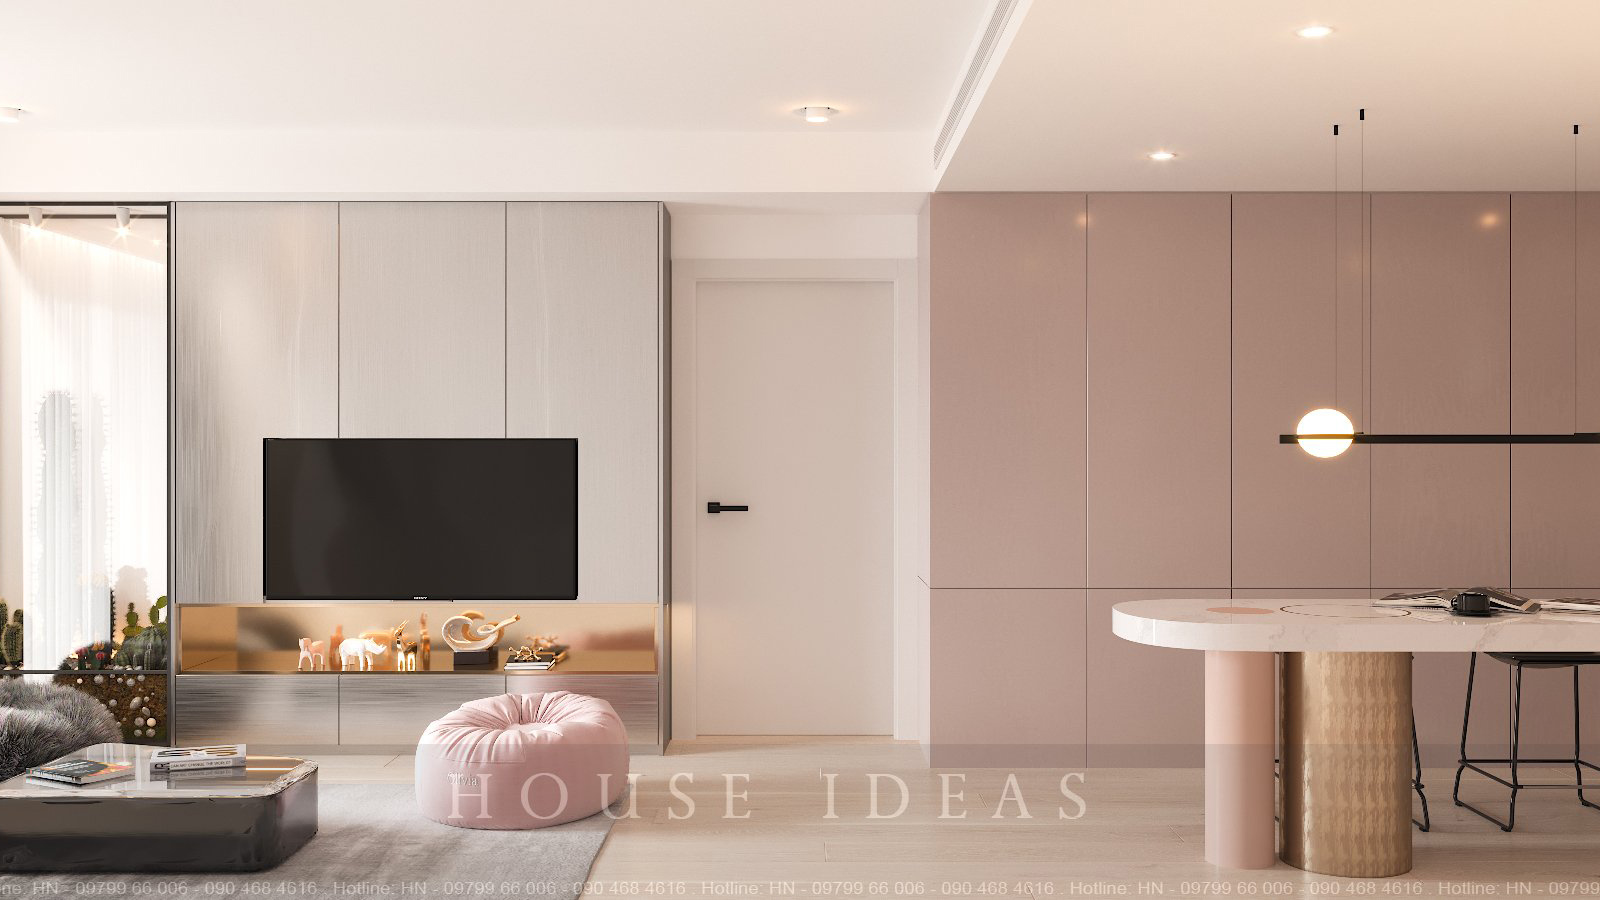 Thiết kế nội thất phòng khách căn hộ Lancaster Núi Trúc tone màu rose gold sang chảnh